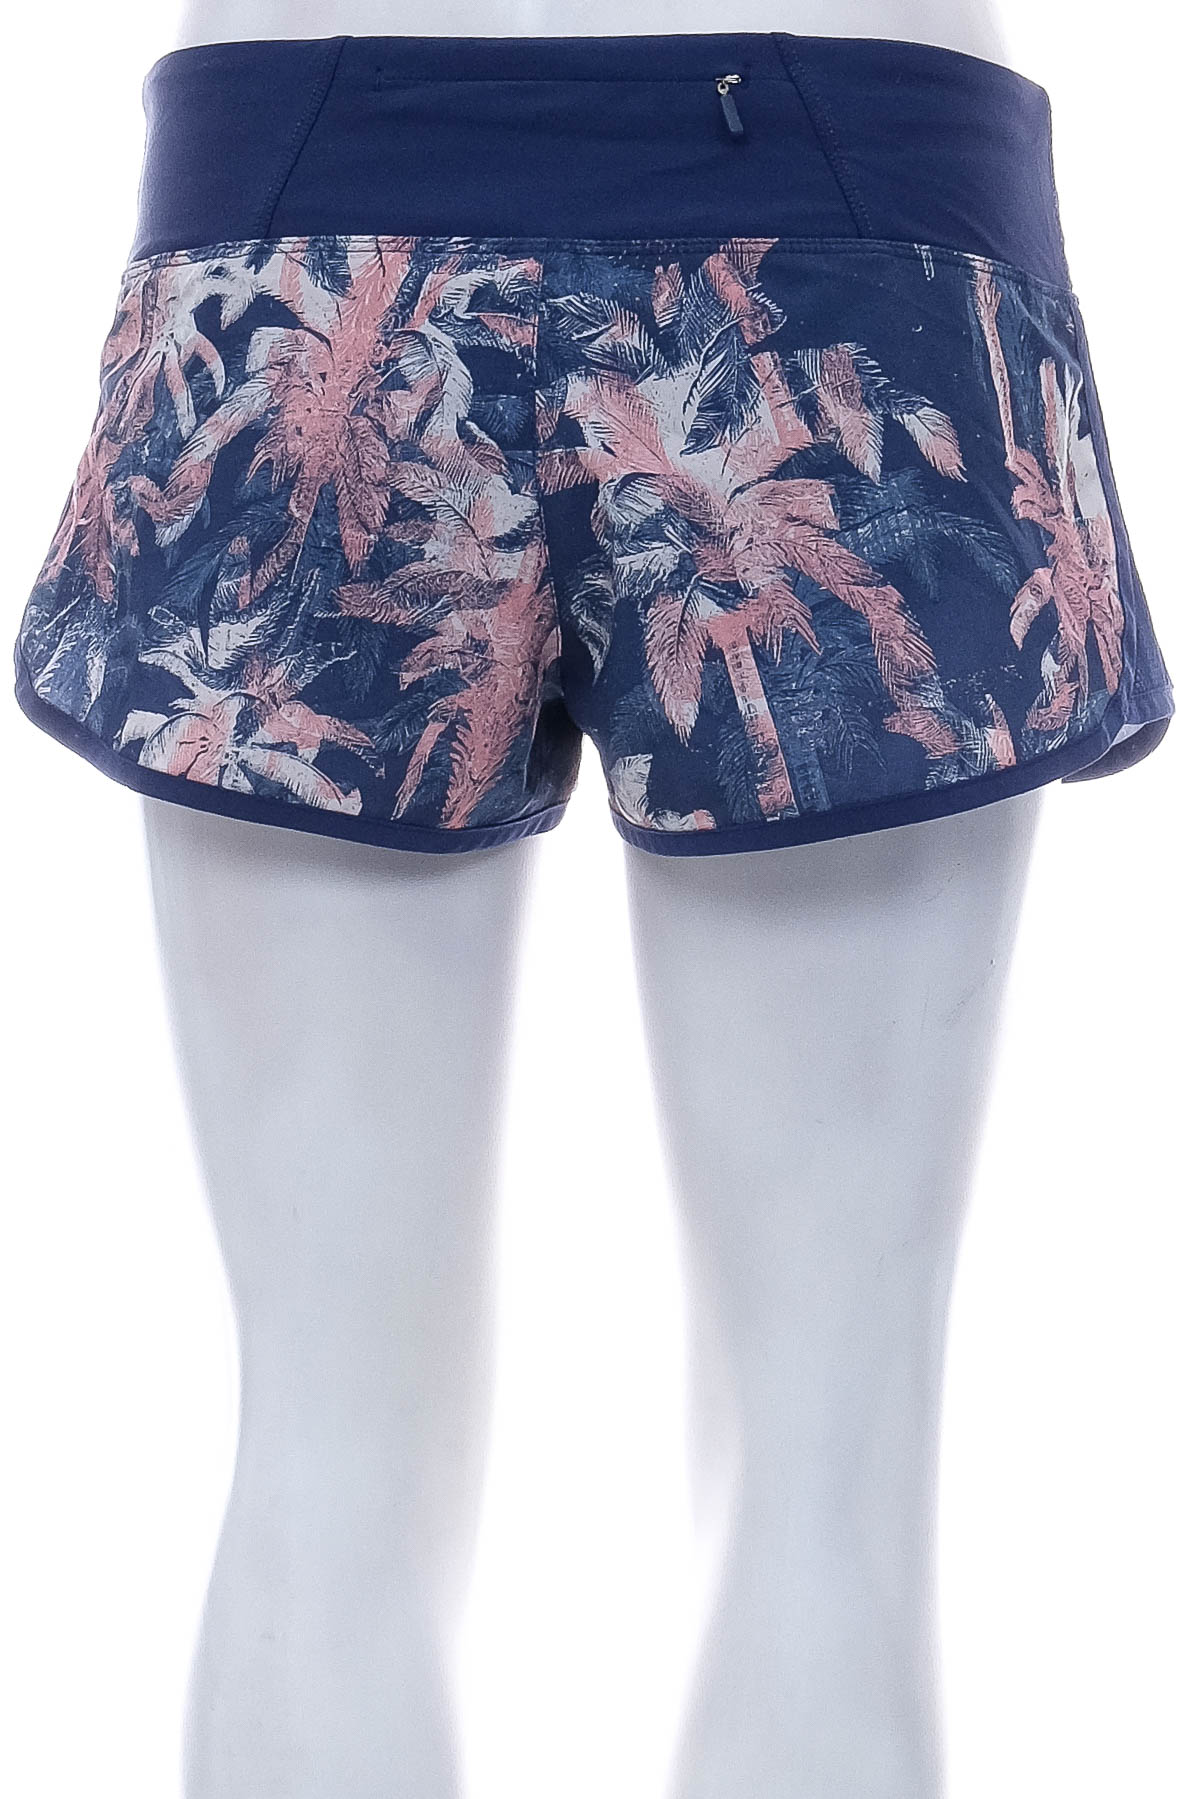 Women's shorts - ROXY - 1